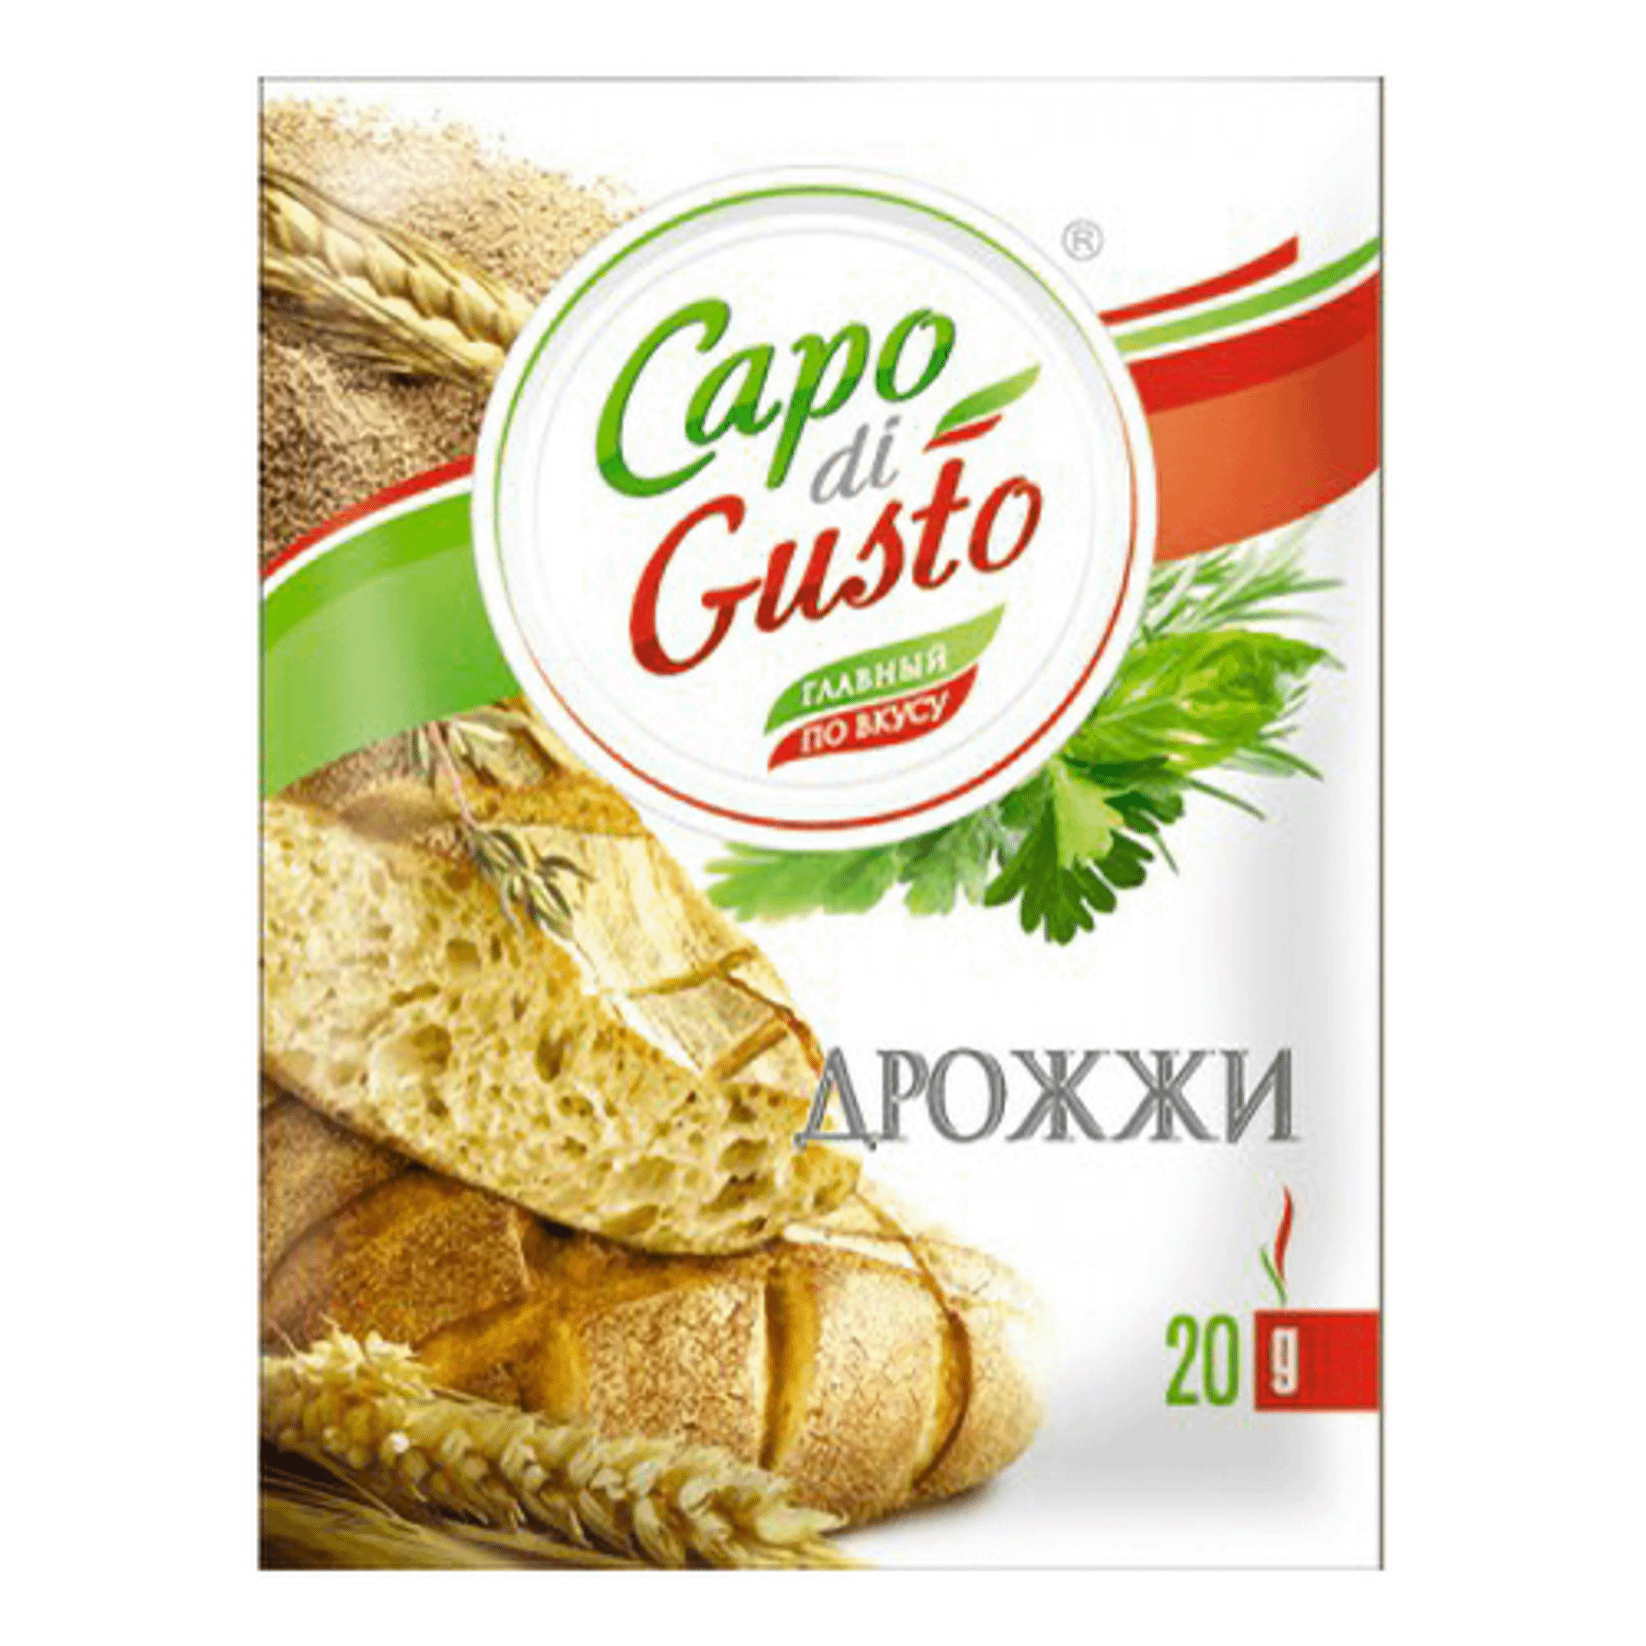 Дрожжи Capo di Gusto быстрорастворимые 20 г дрожжи саф момент хлебопекарные сухие быстродействующие для пиццы 12 гр